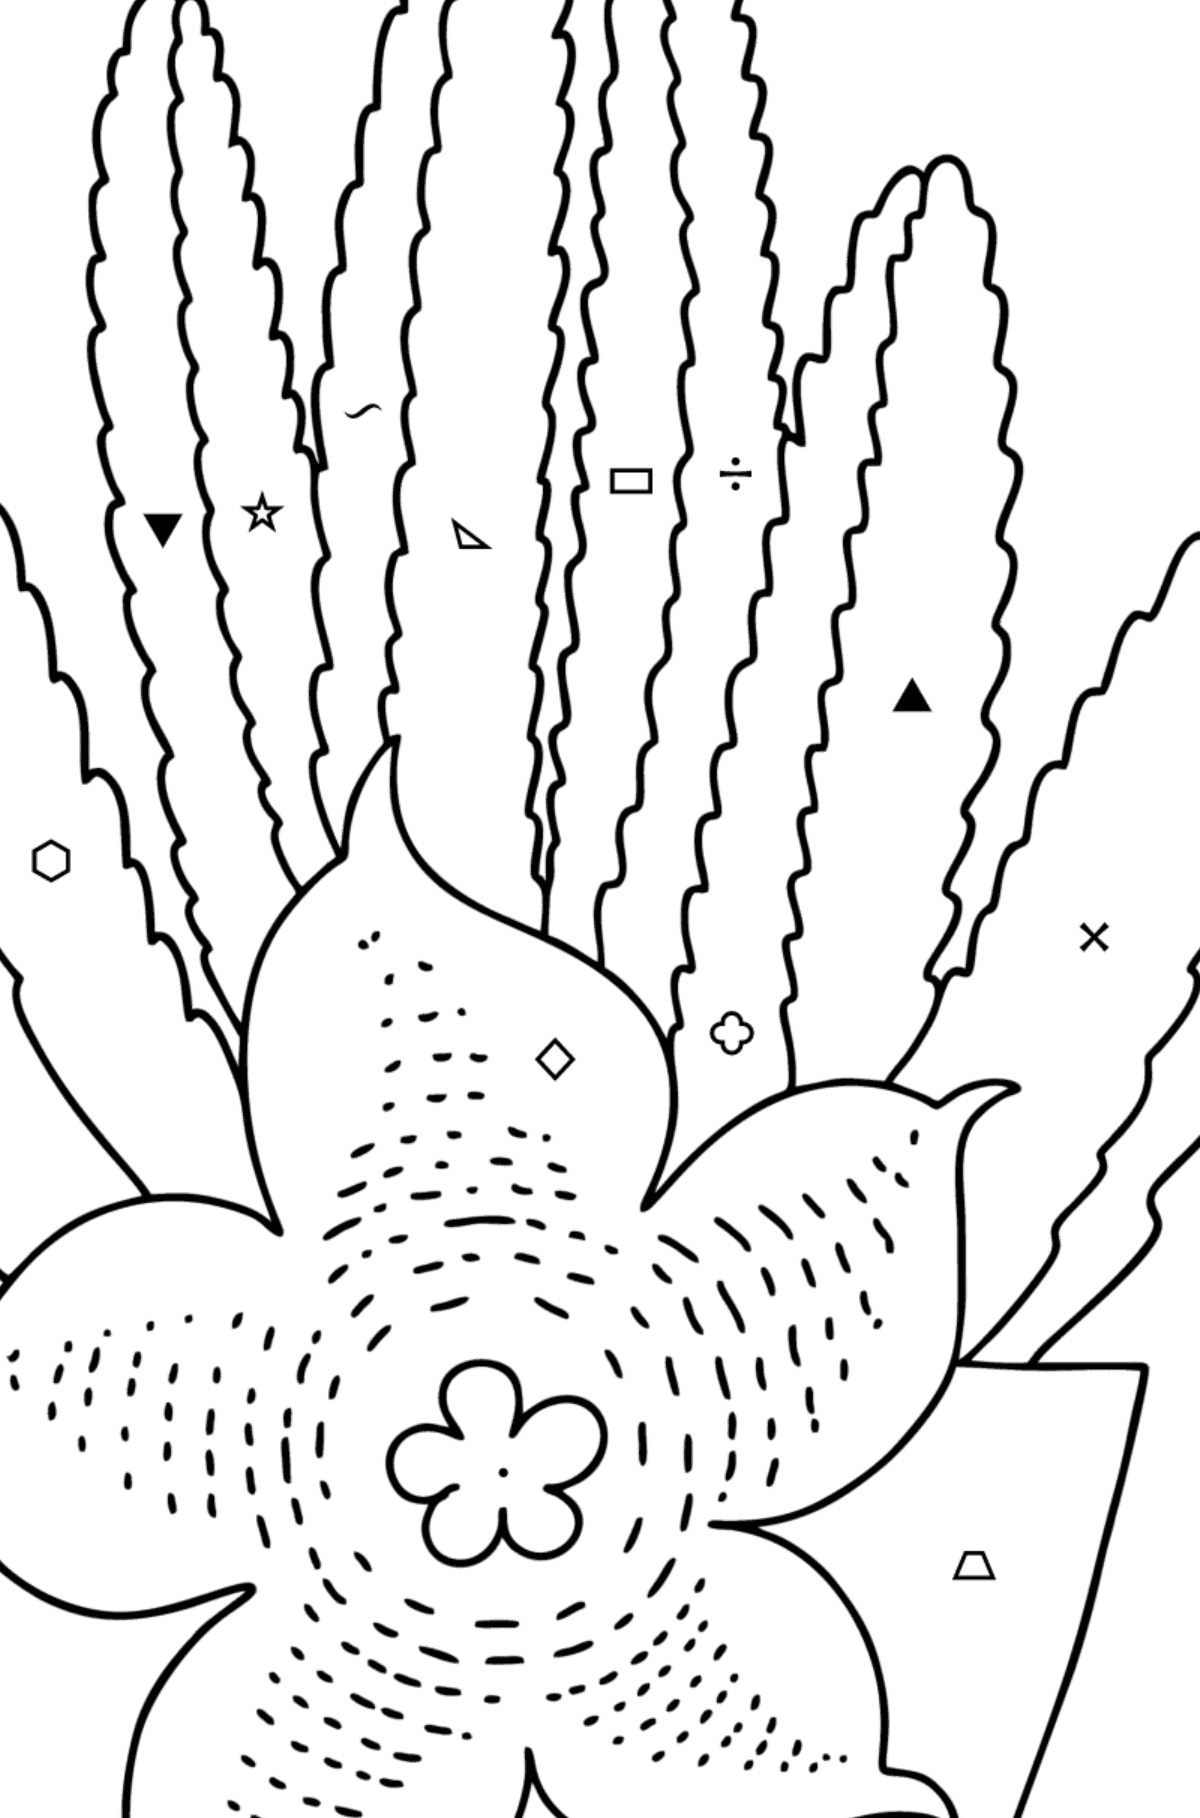 Kolorowanka Kaktus Stapelia - Kolorowanie według symboli i figur geometrycznych dla dzieci